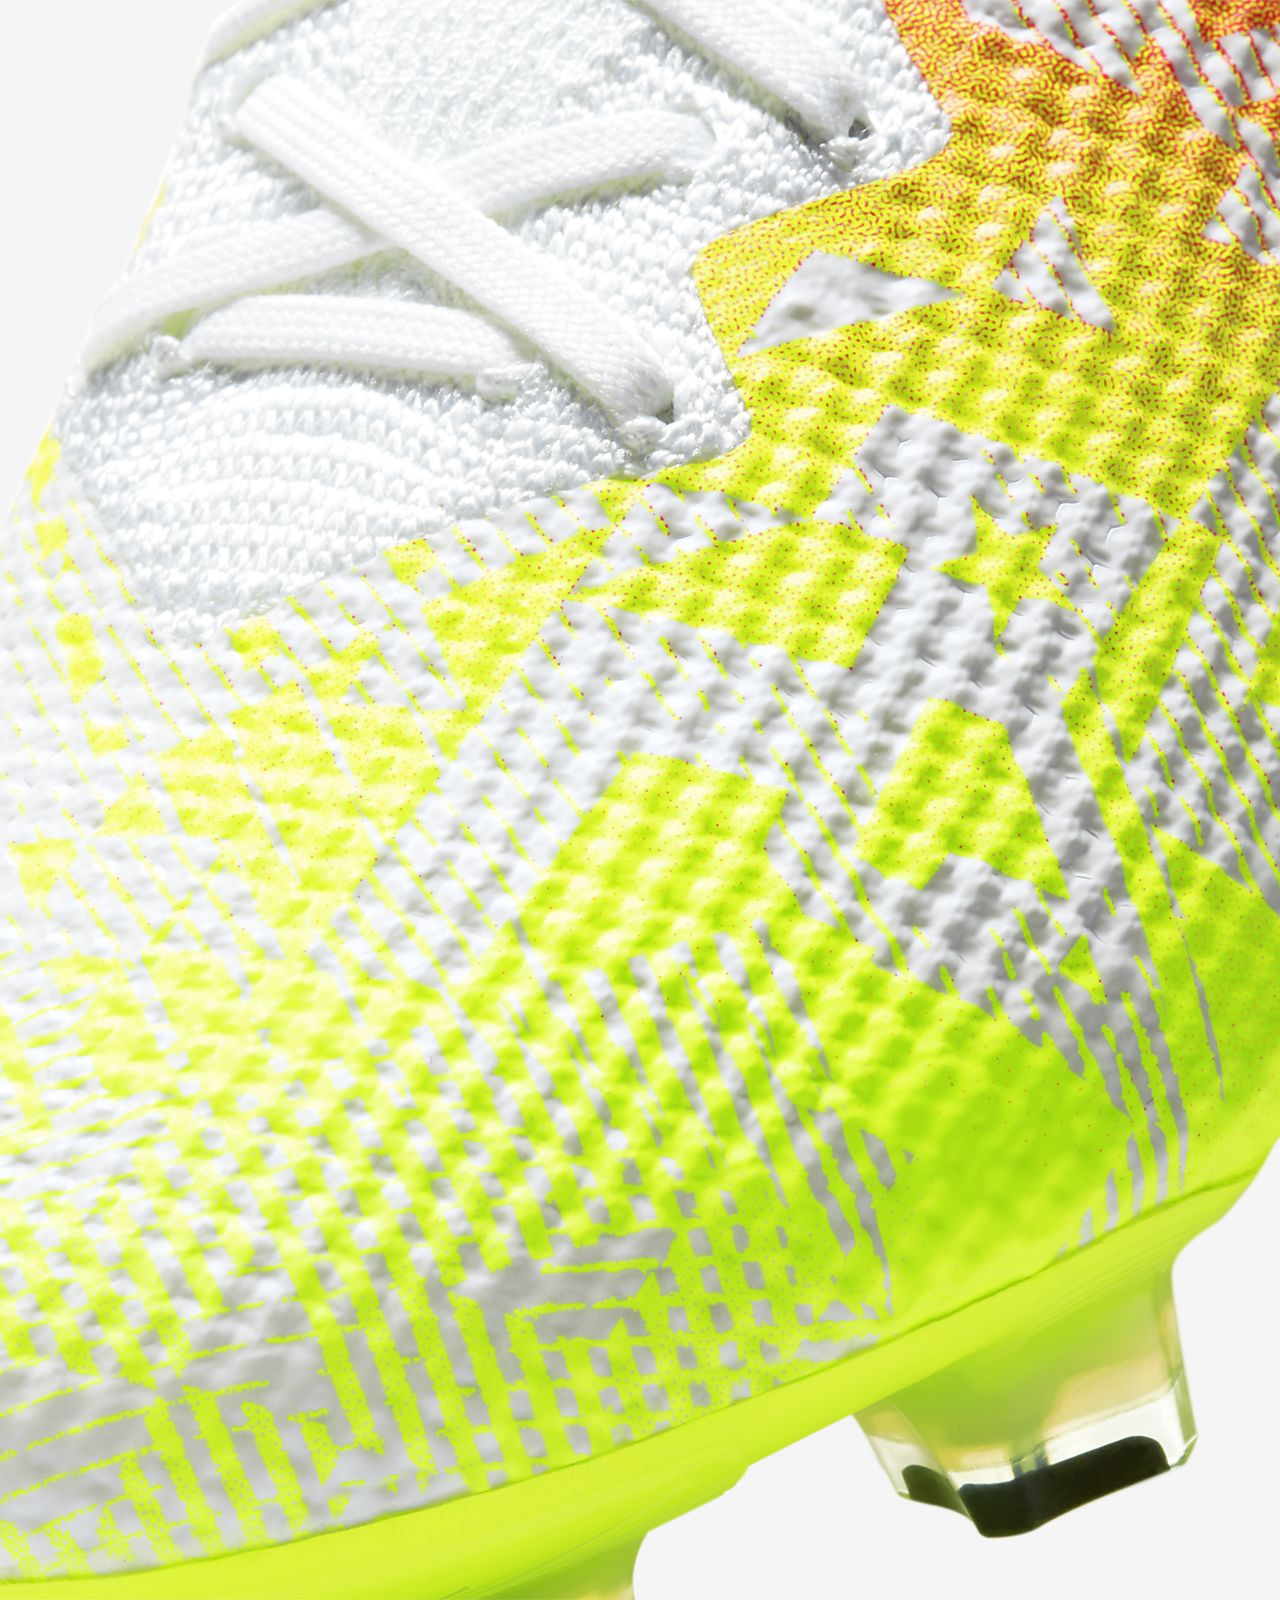 Nike Mercurial Vapor 13 Elite FG Future DNA Max Orange.